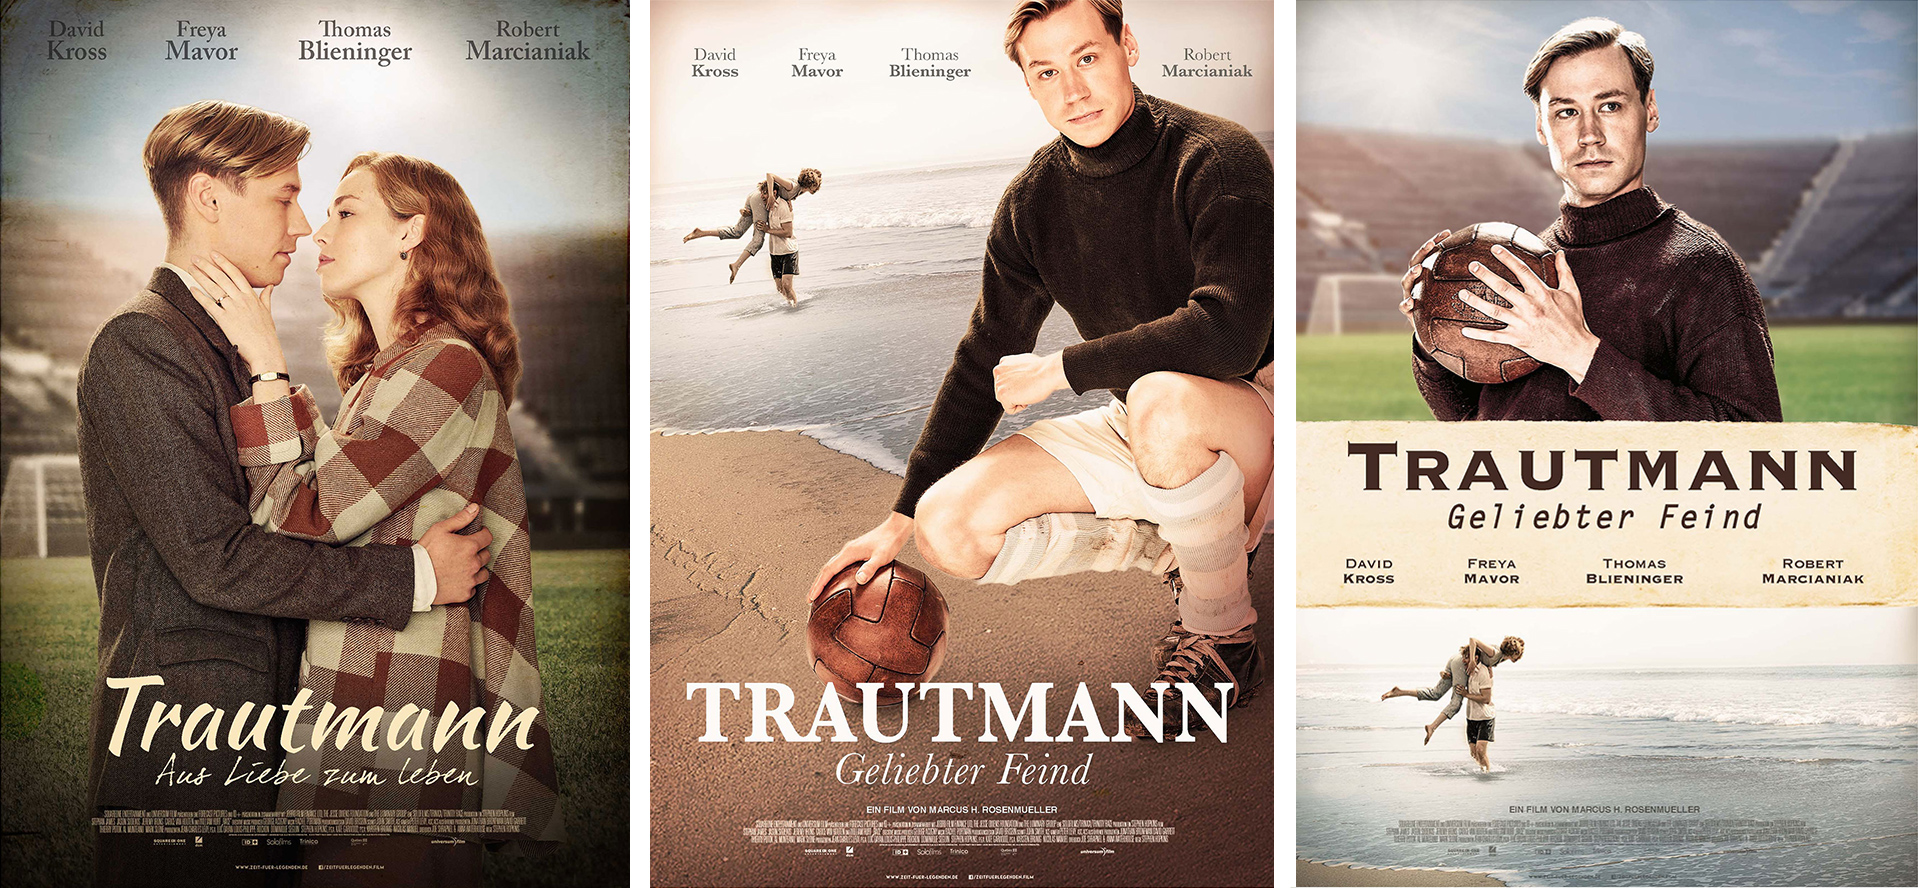 Affiche du film allemand "Trautman" - propositions non finales